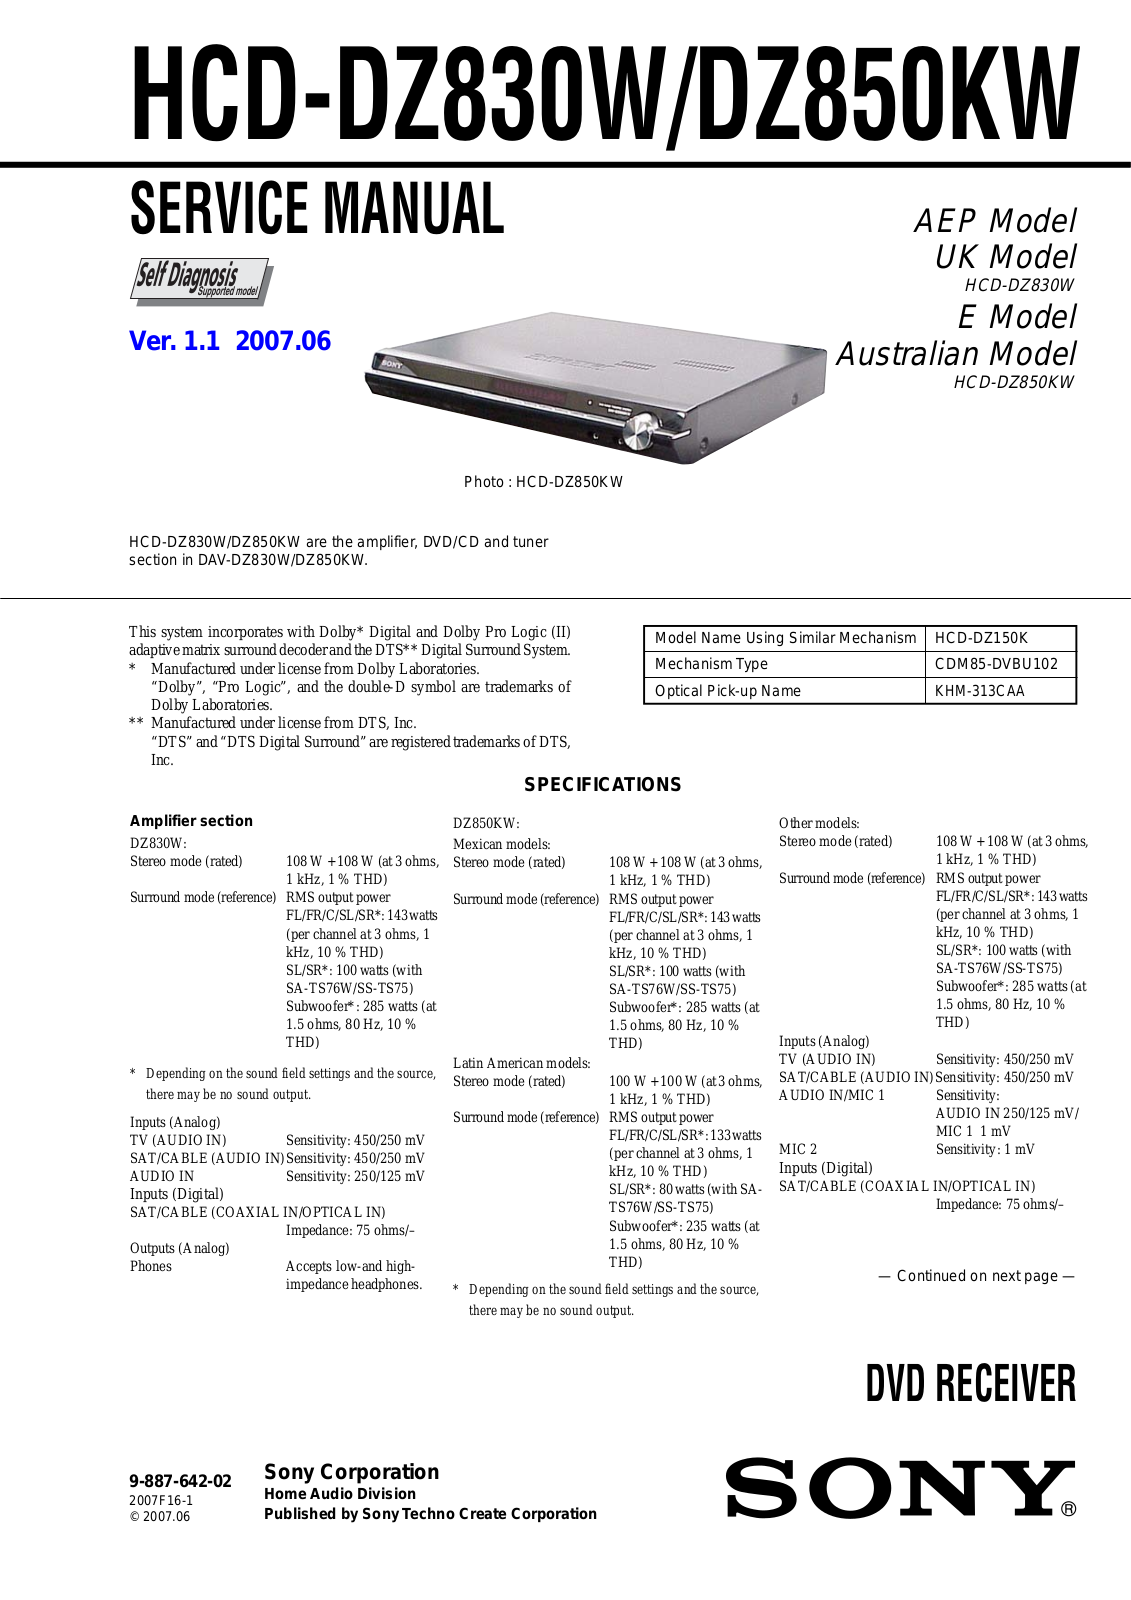 Sony HCDDZ-830-W, HCDDZ-850-KW Service manual